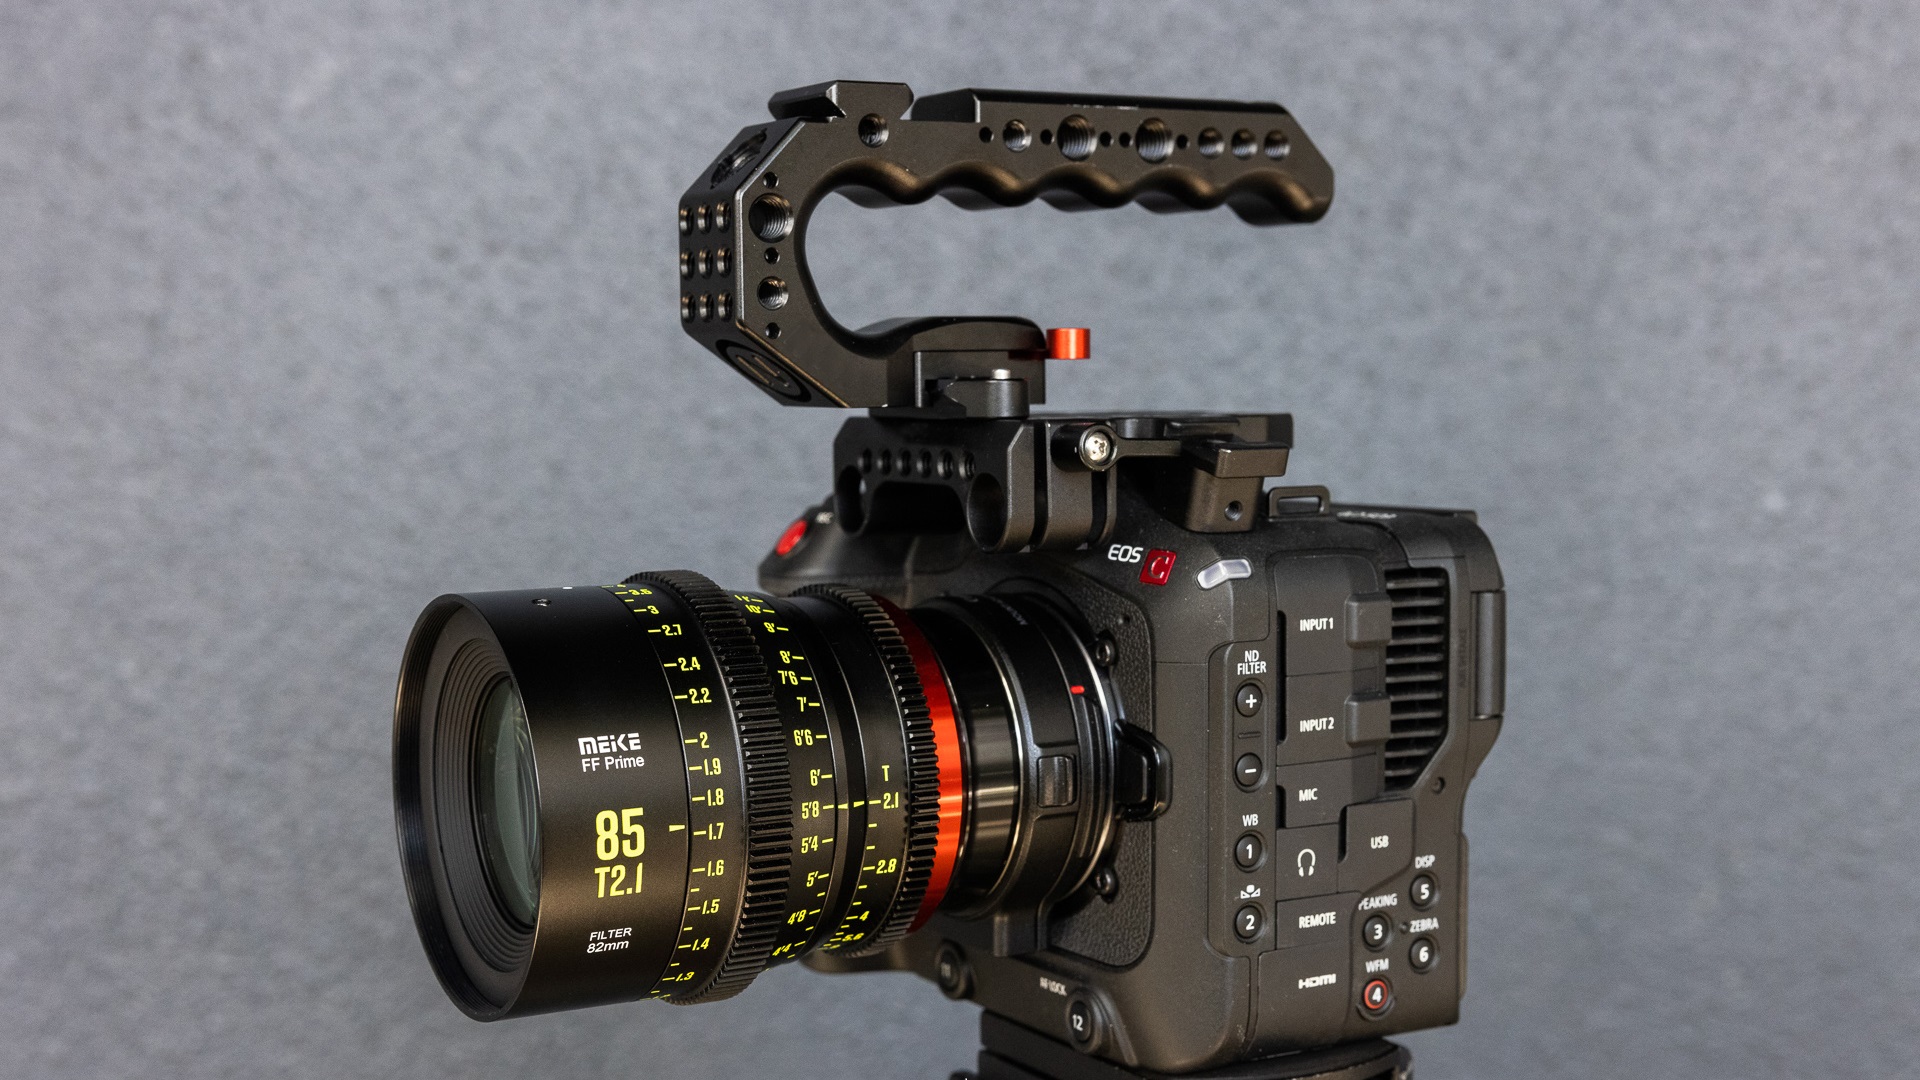 Meike 85mm T2.1 Full-Frame Cinema Prime Lens Announced | CineD